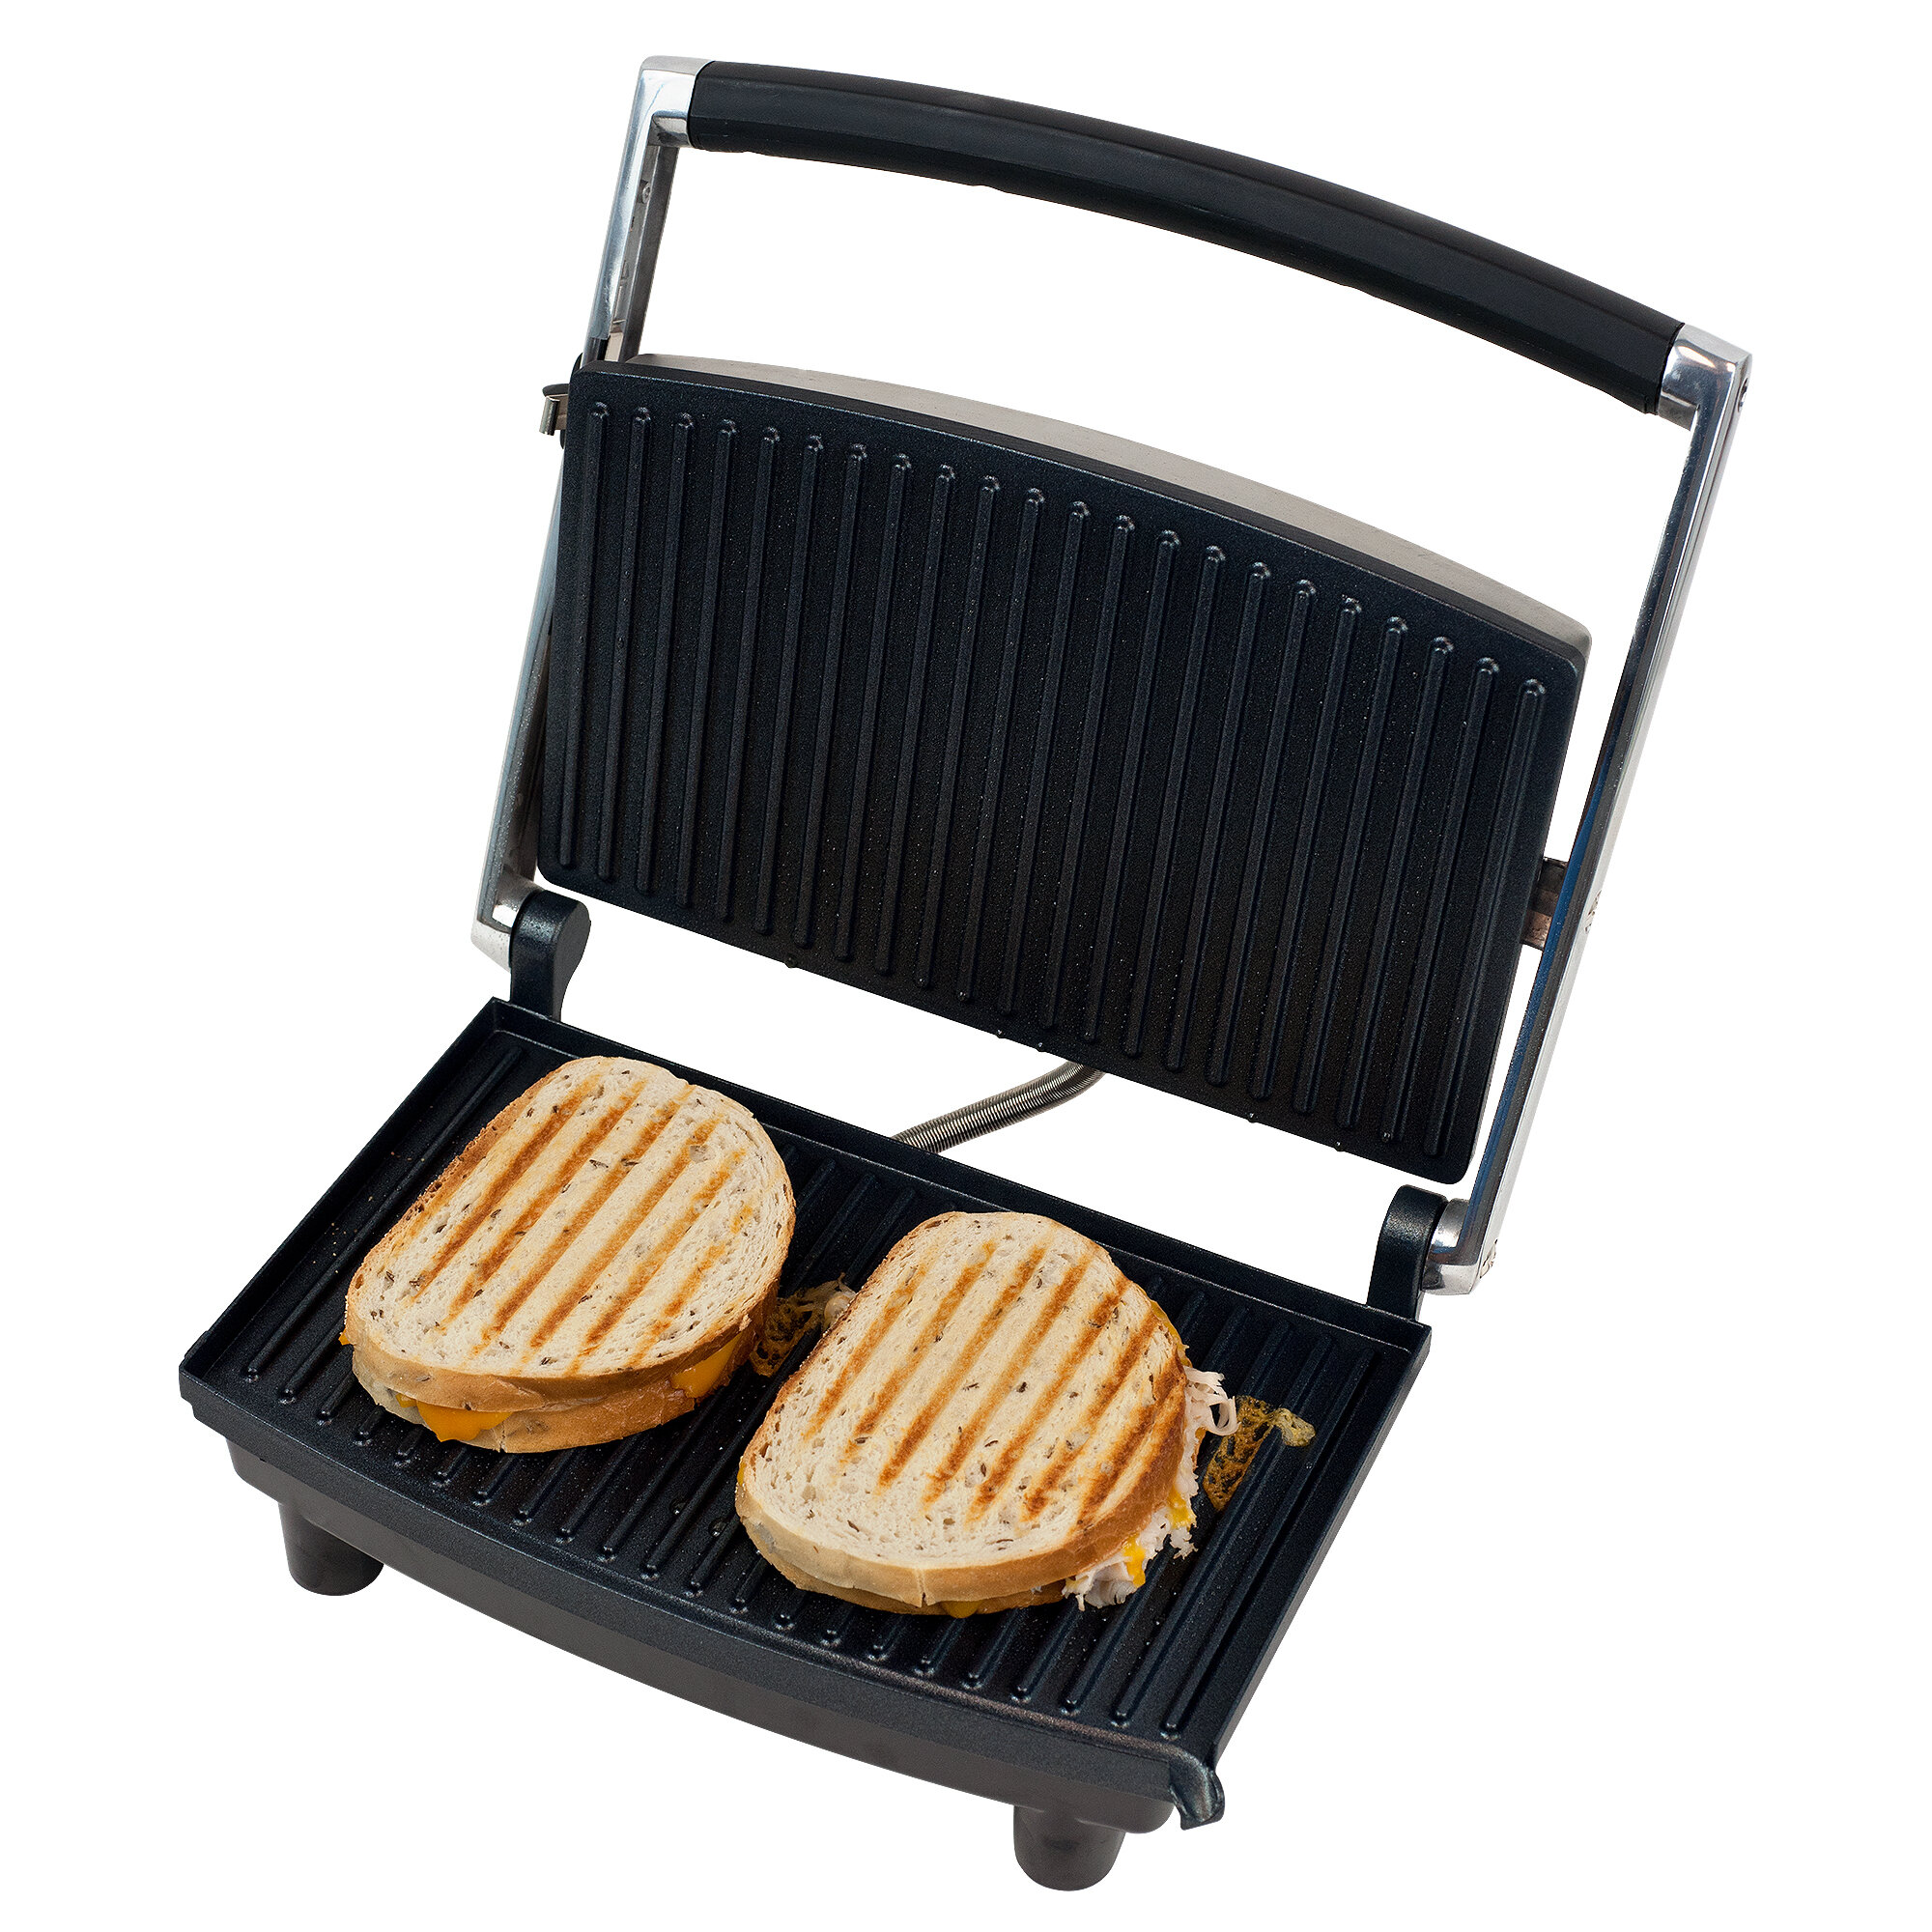 Kalorik Multi-Purpose Waffle, Grill & Sandwich Maker, Stainless Steel